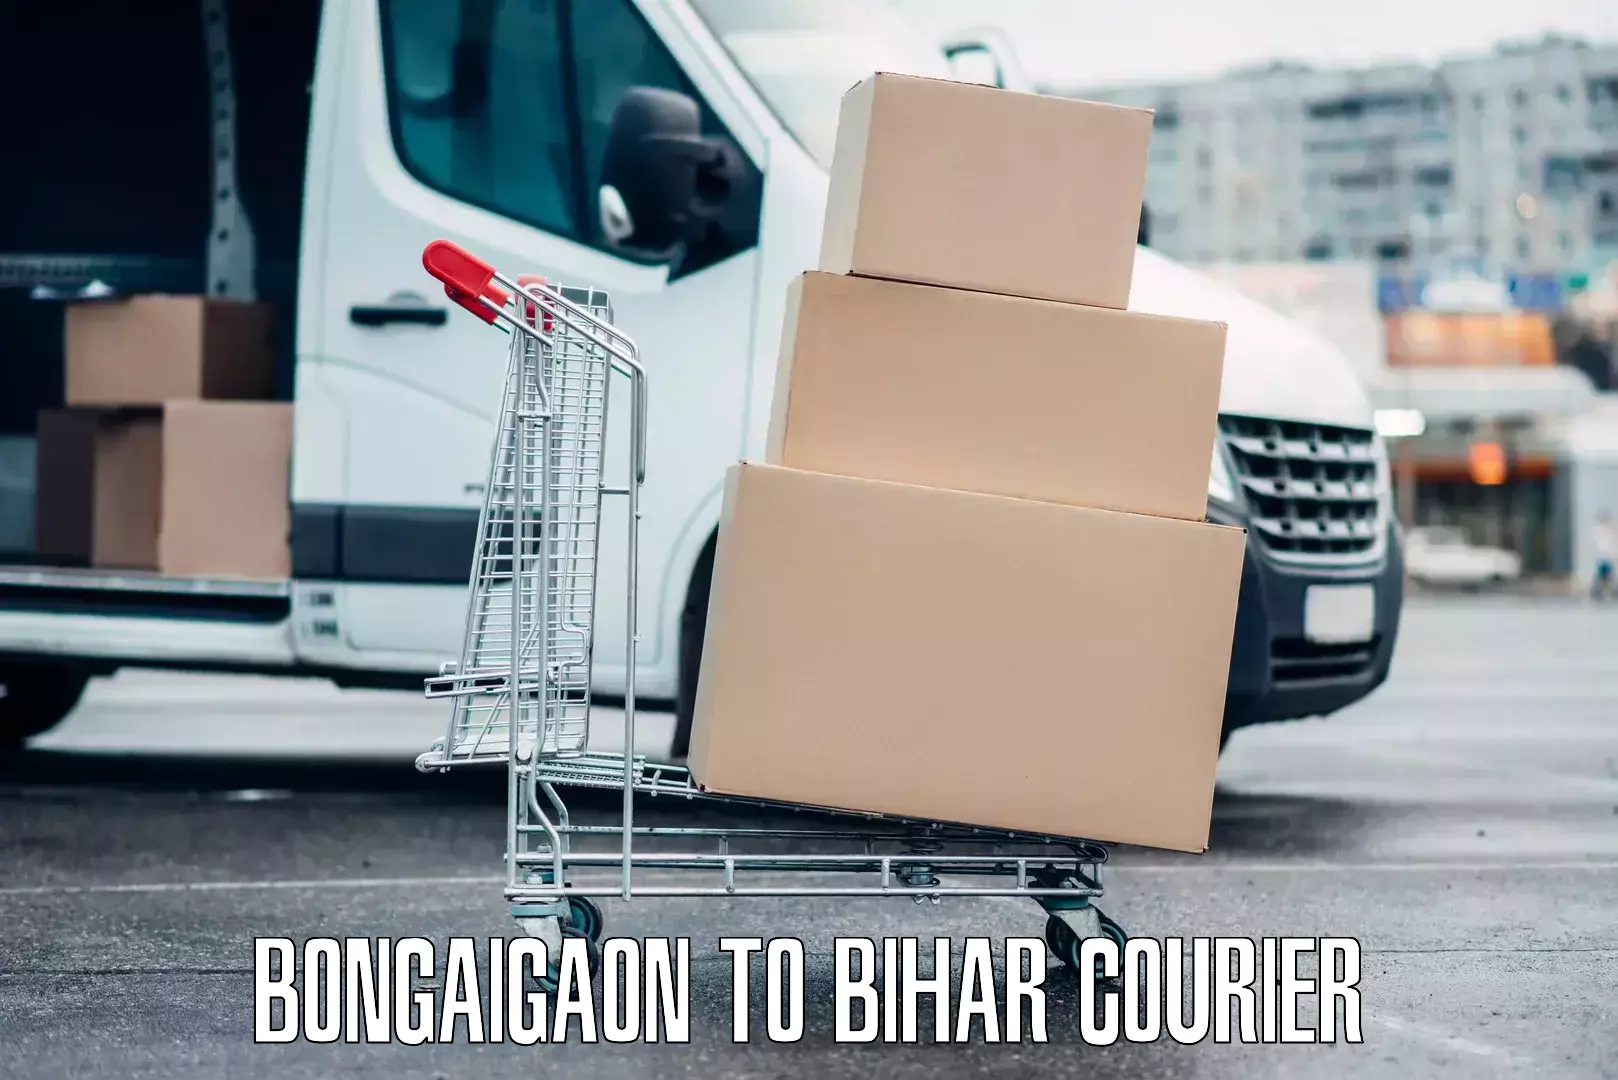 Luggage forwarding service Bongaigaon to Bihar